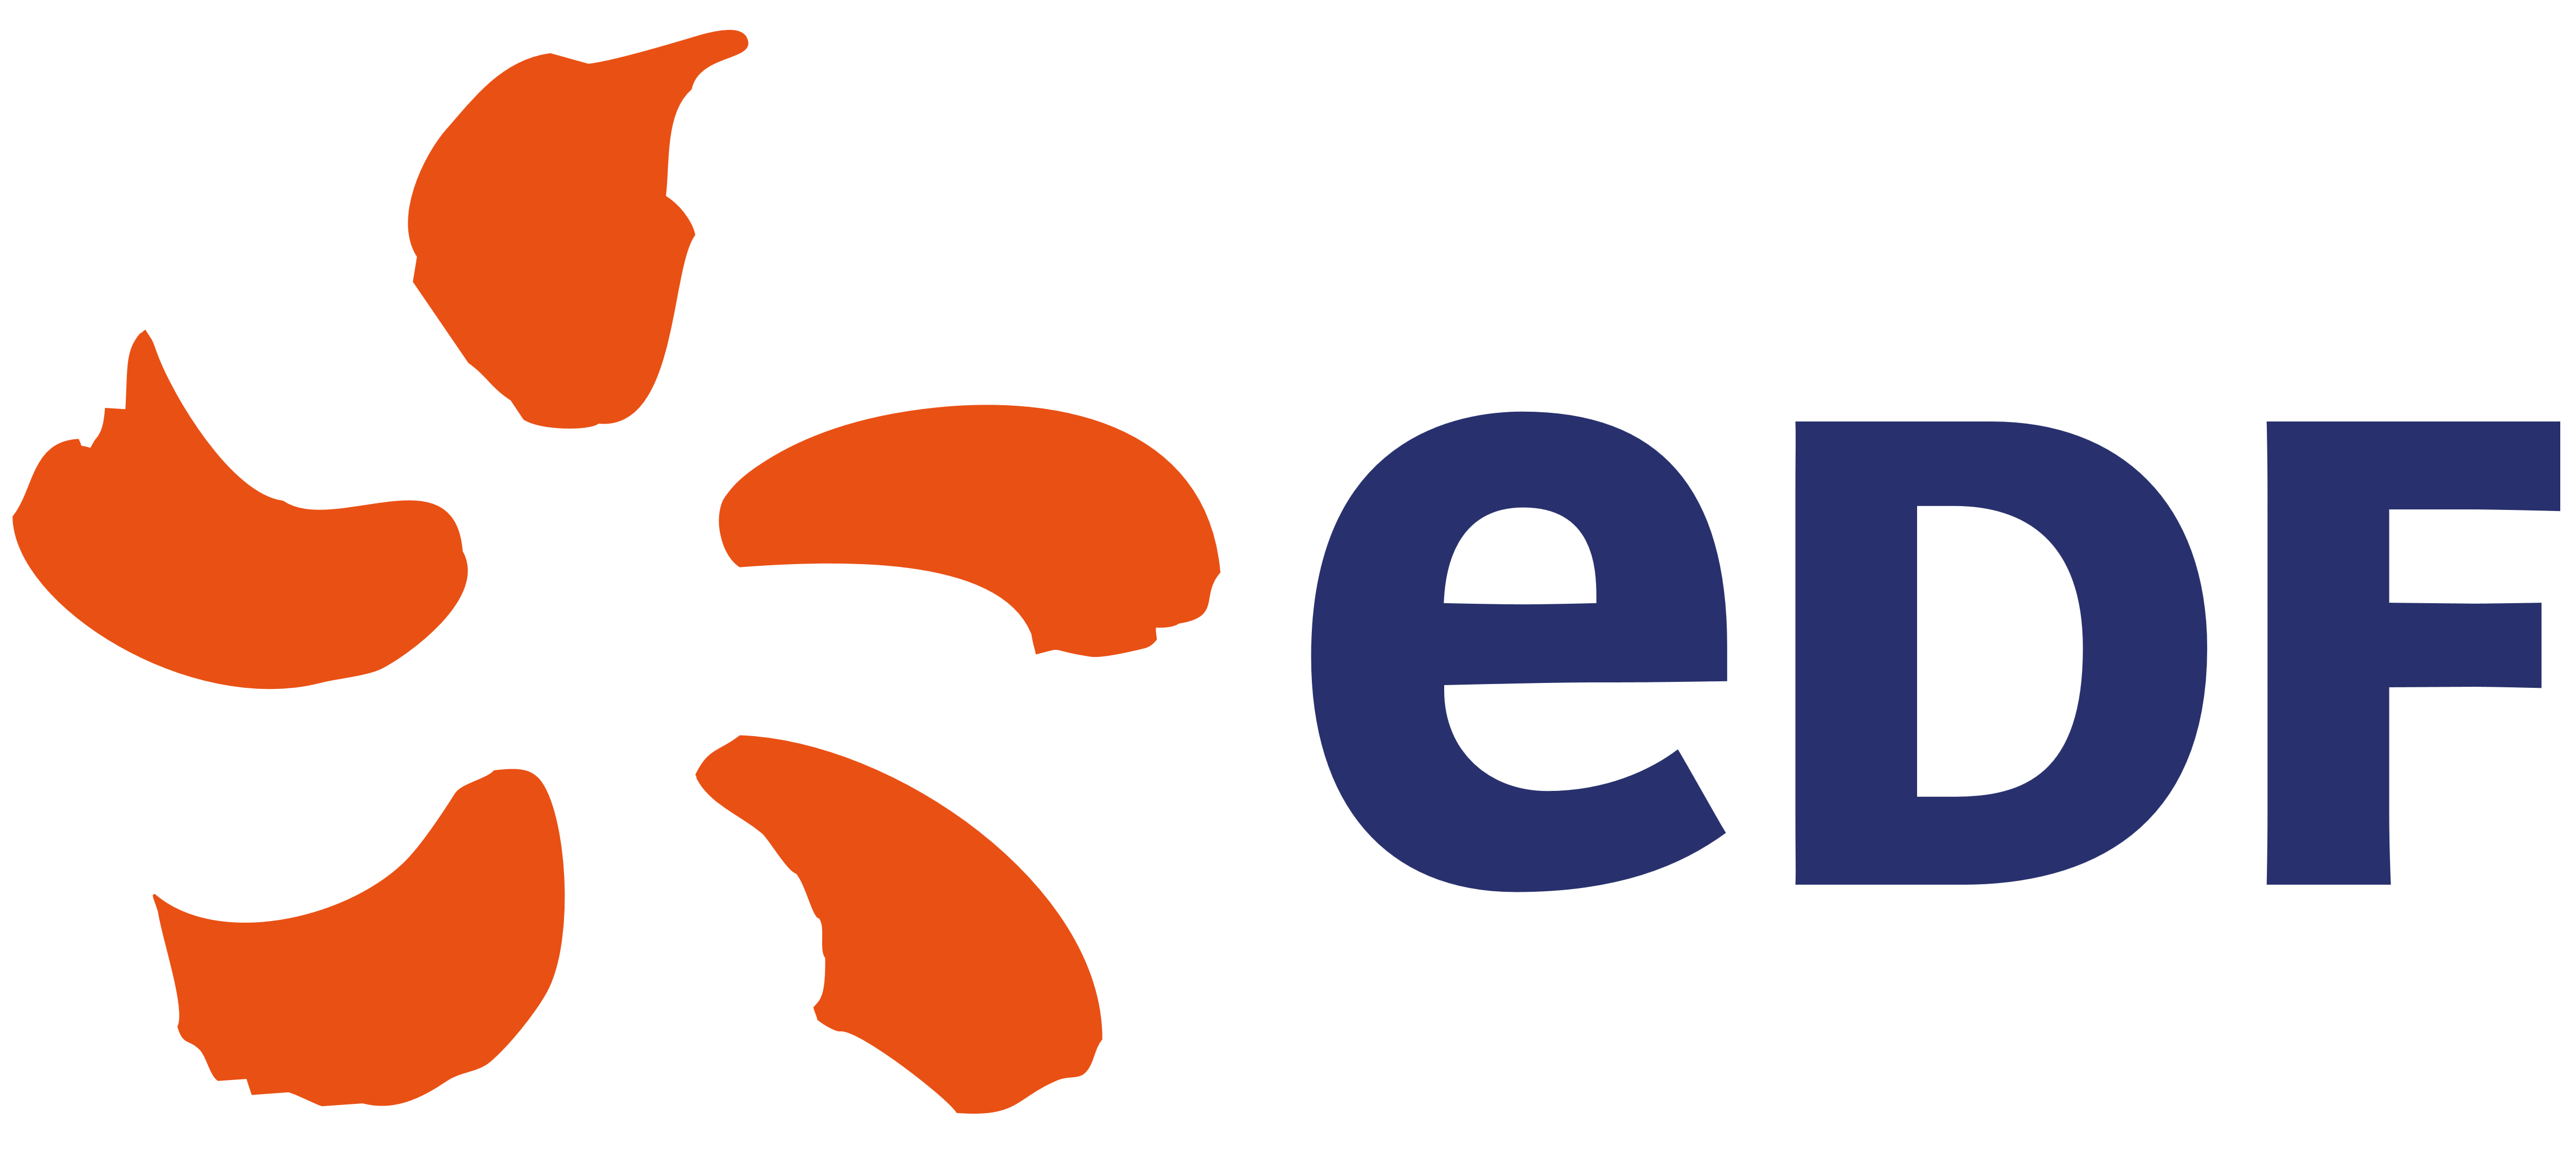 EDF logo, logotype